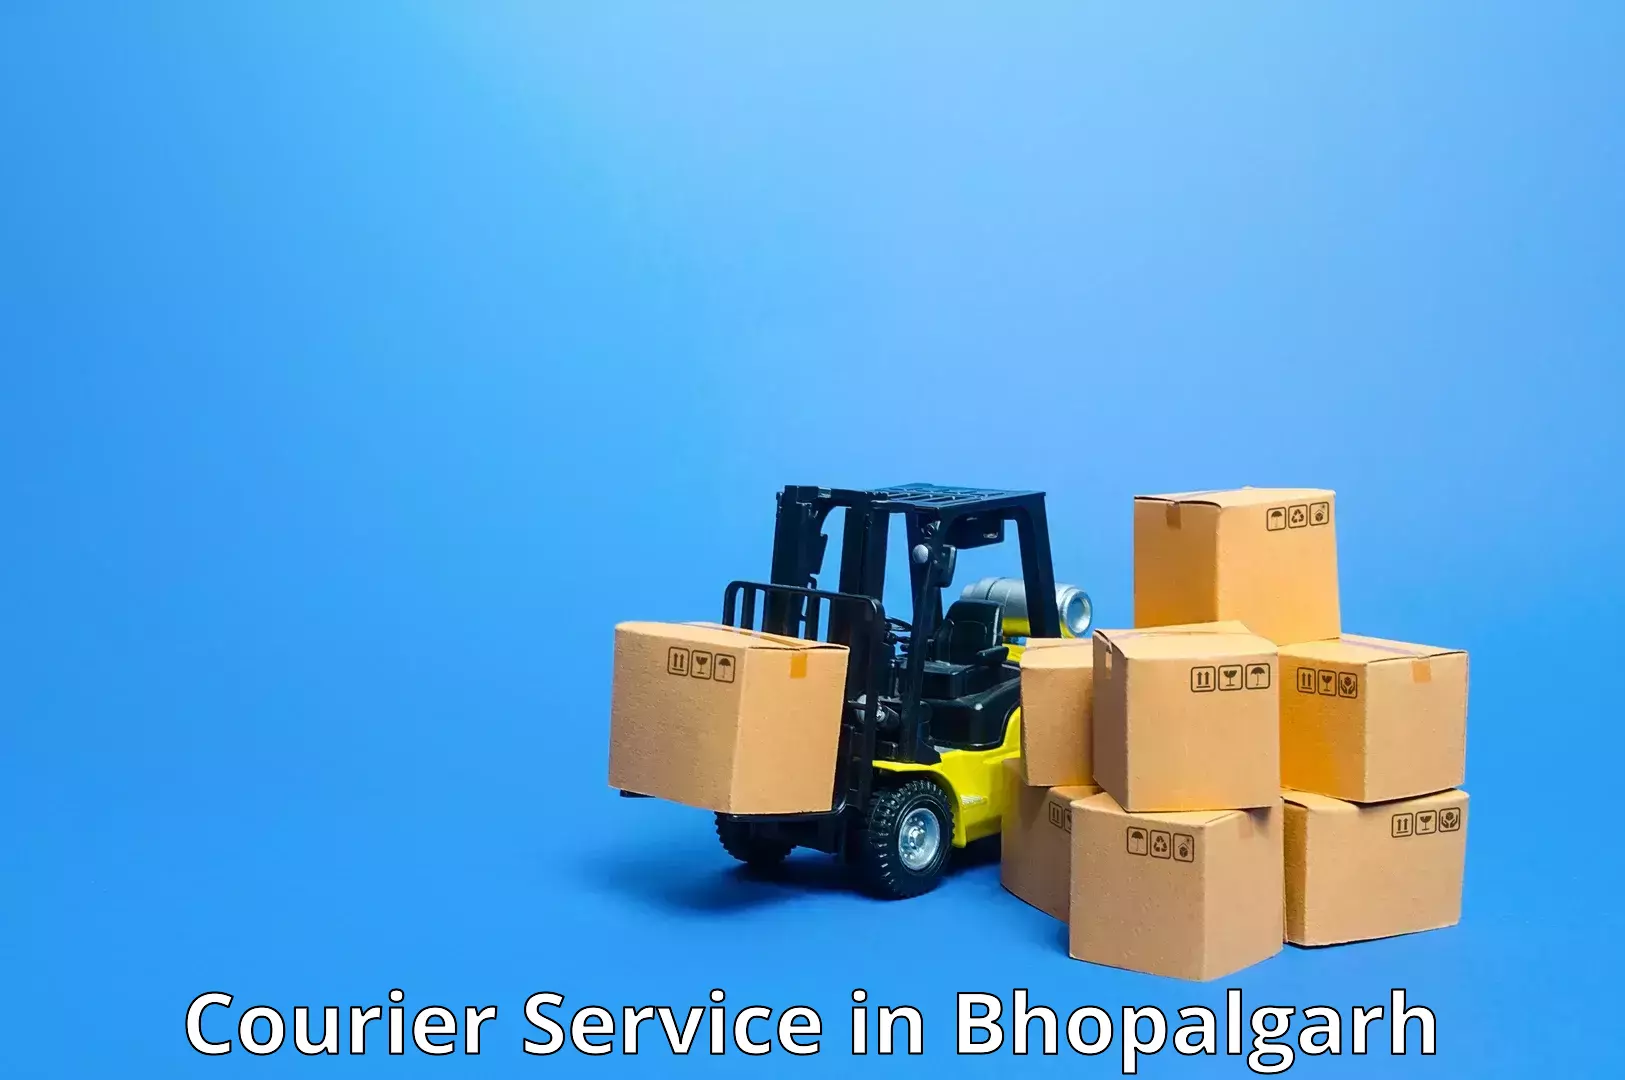 Package delivery network in Bhopalgarh